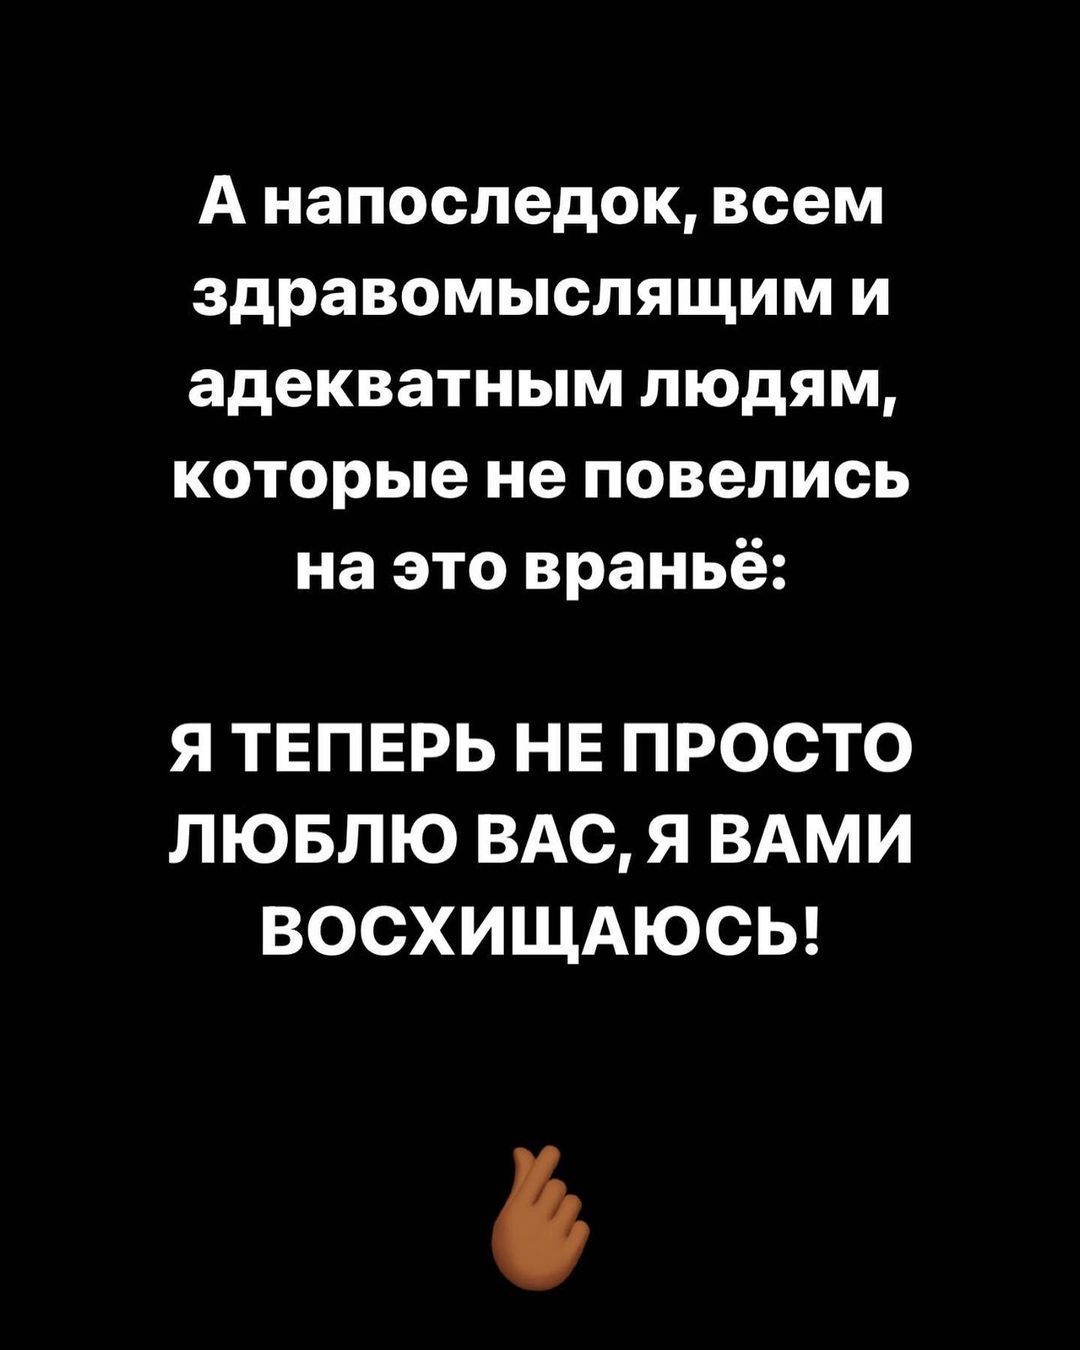 Jah Khalib виправдався перед росіянами за підтримку України / © instagram.com/JahKhalib